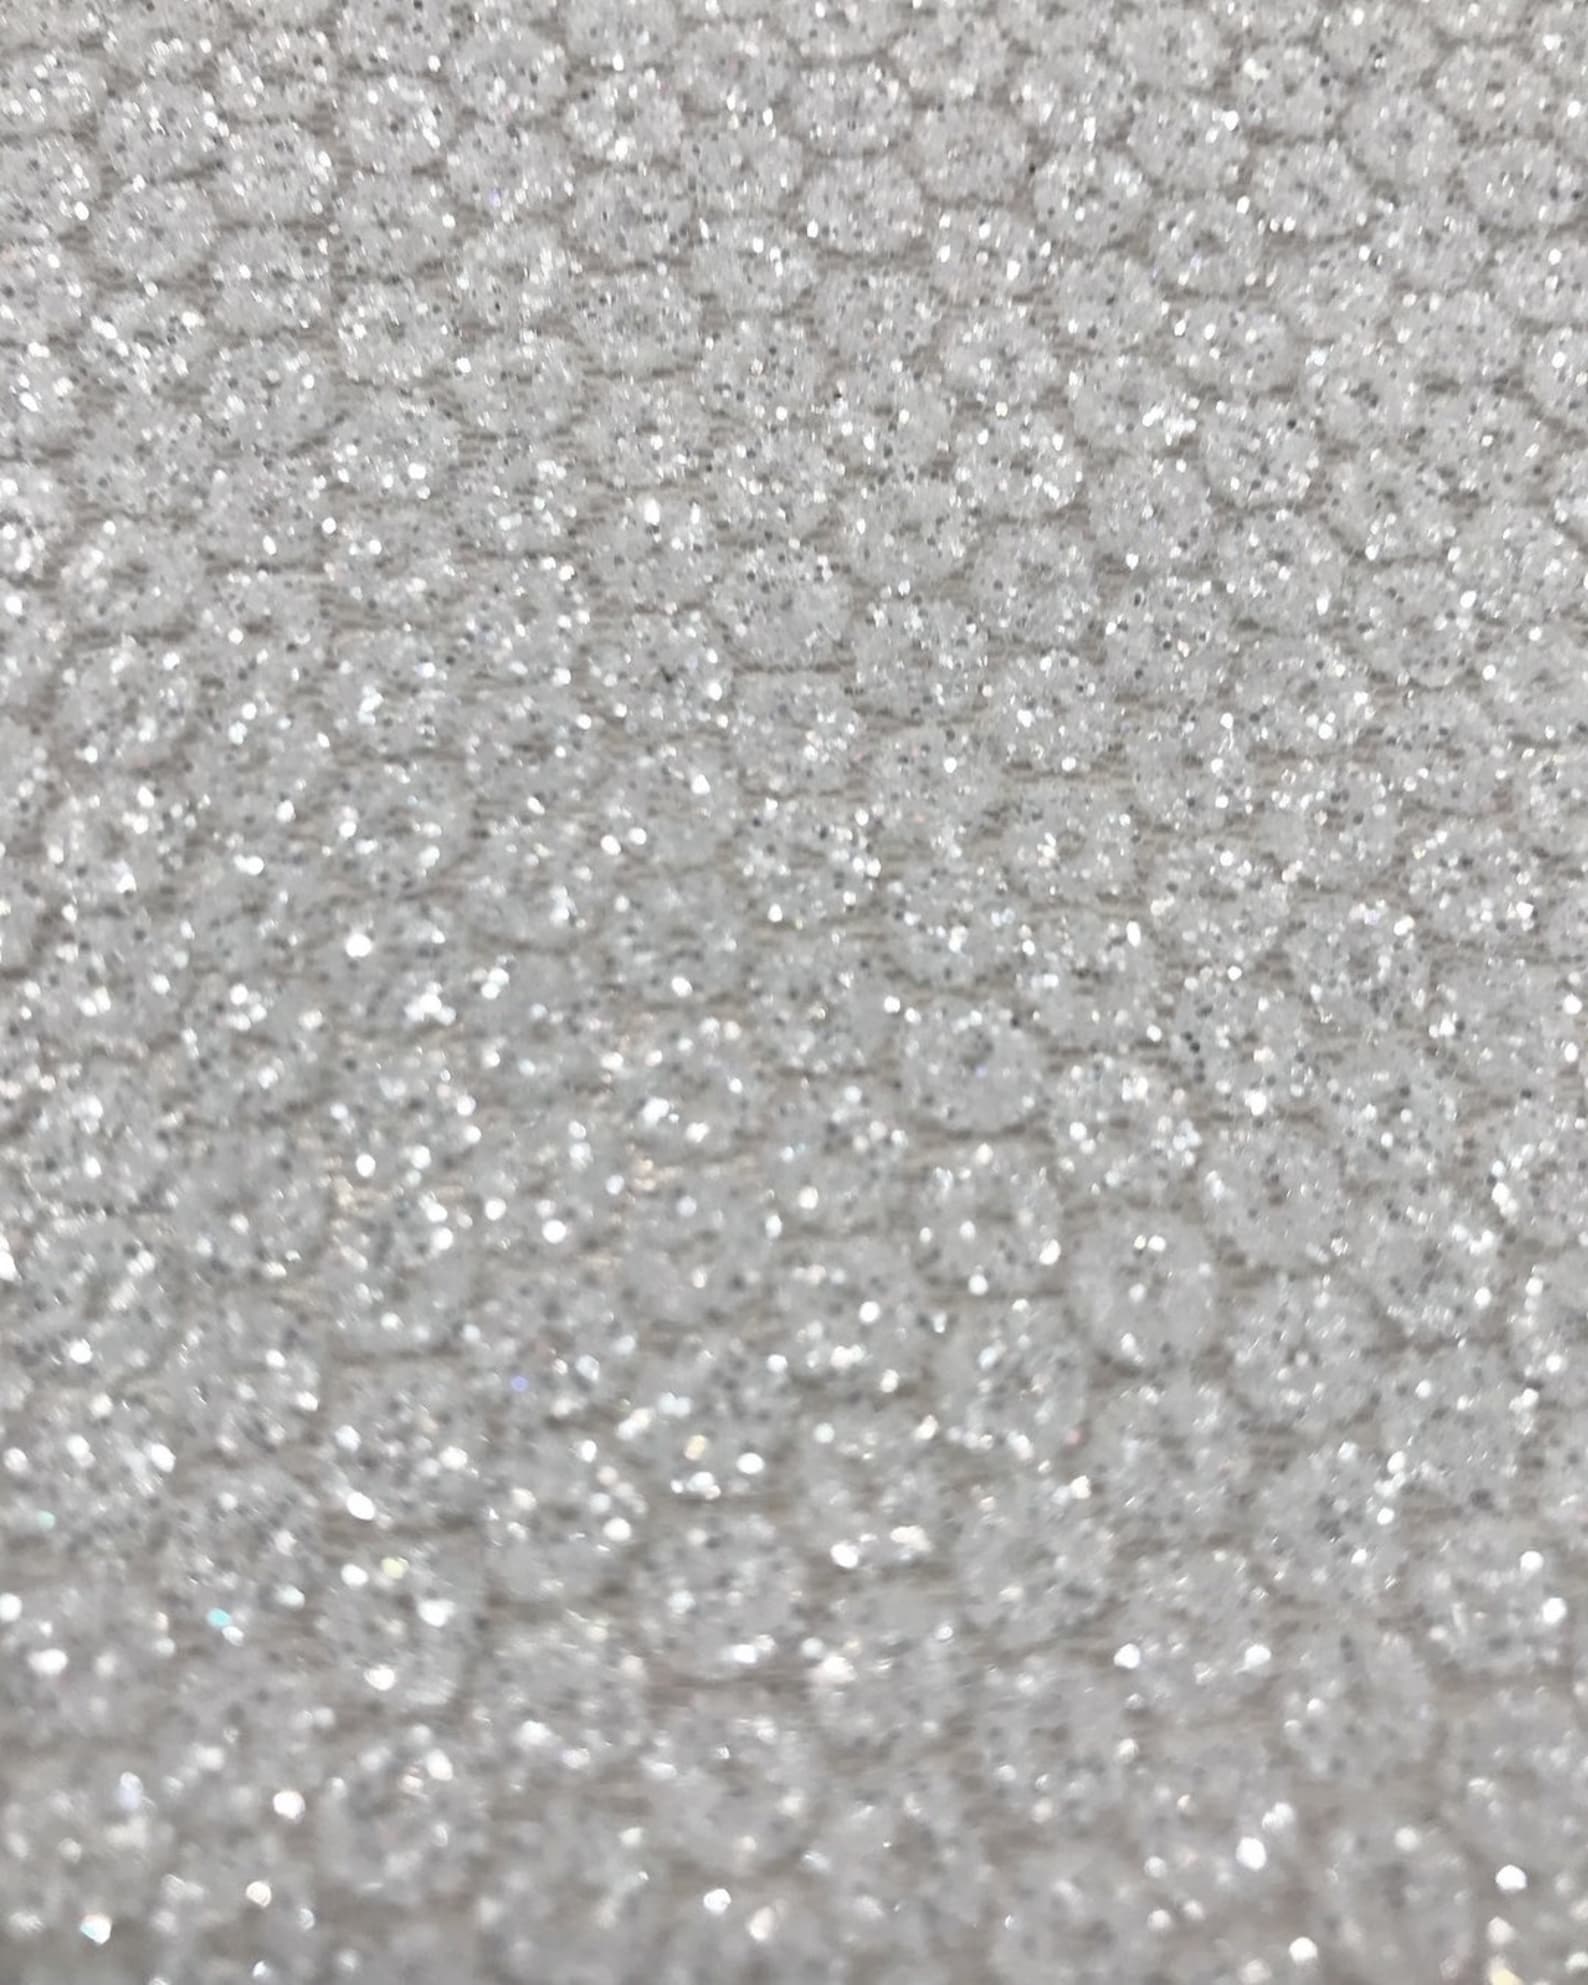 Glitter fabric sheer White mesh material for dresses Ivory | Etsy